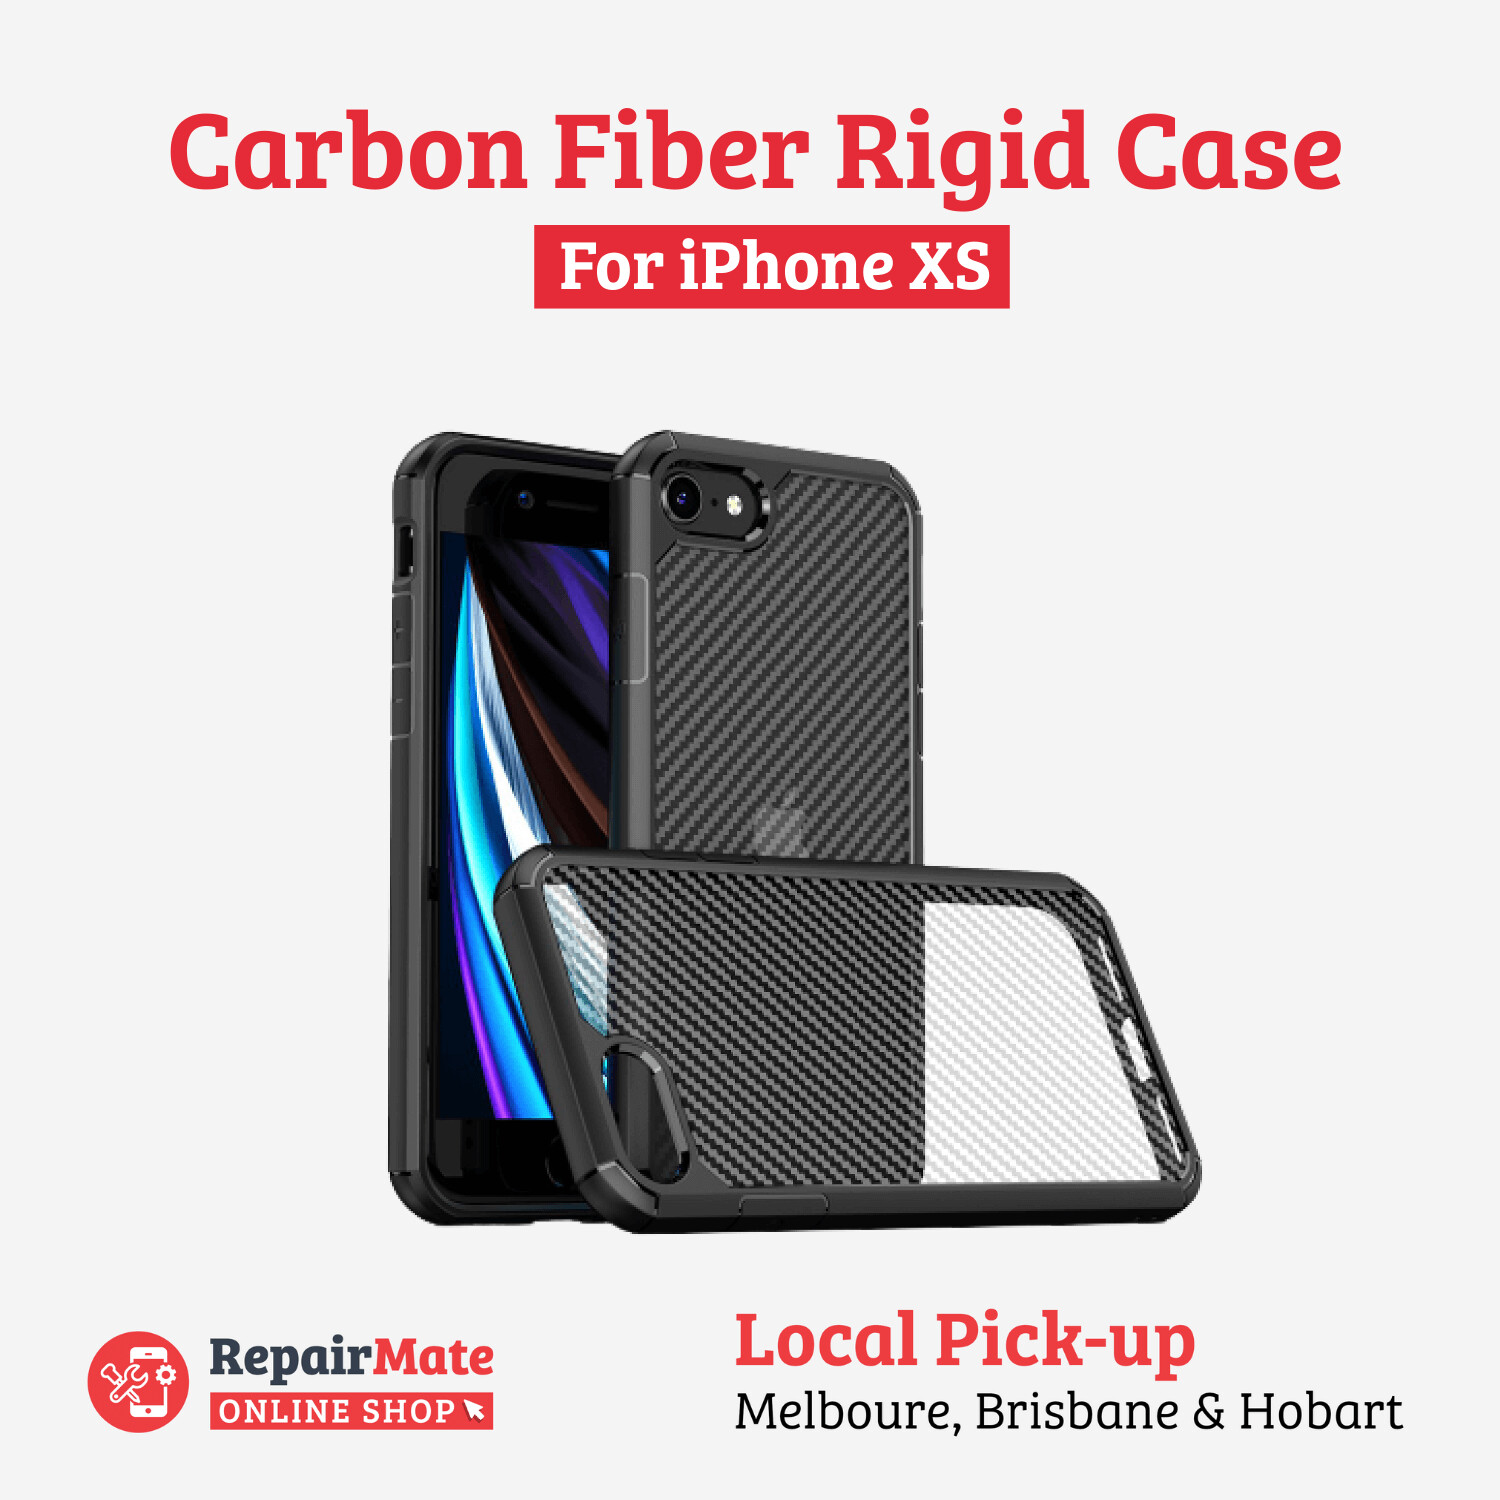 iPhone XS Carbon Fiber Rigid Case Cover